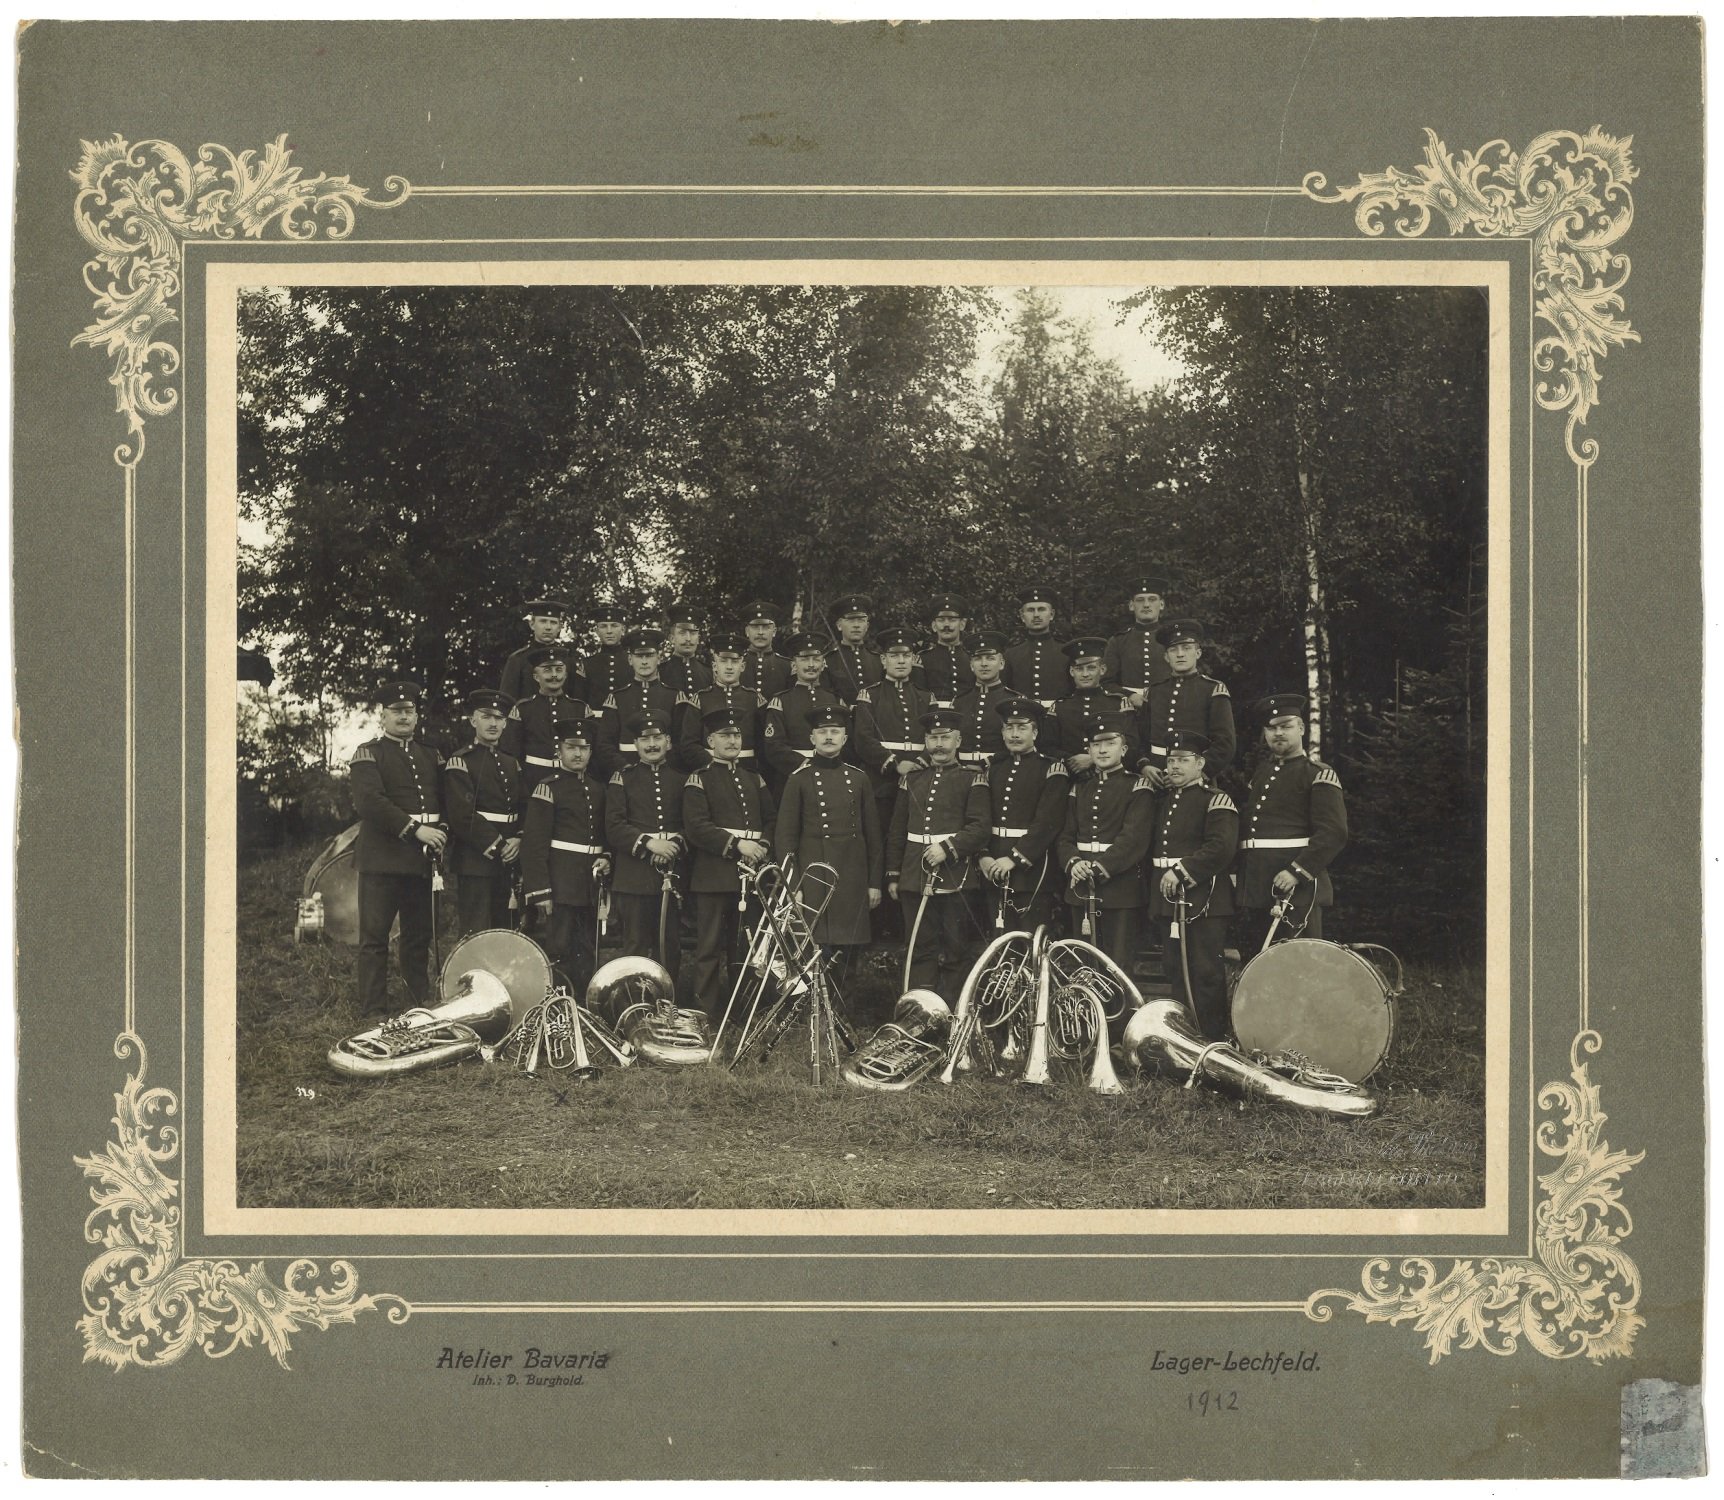 Bayerische Militärmusiker 1912 (Bayerisches Armeemuseum CC BY-NC-ND)